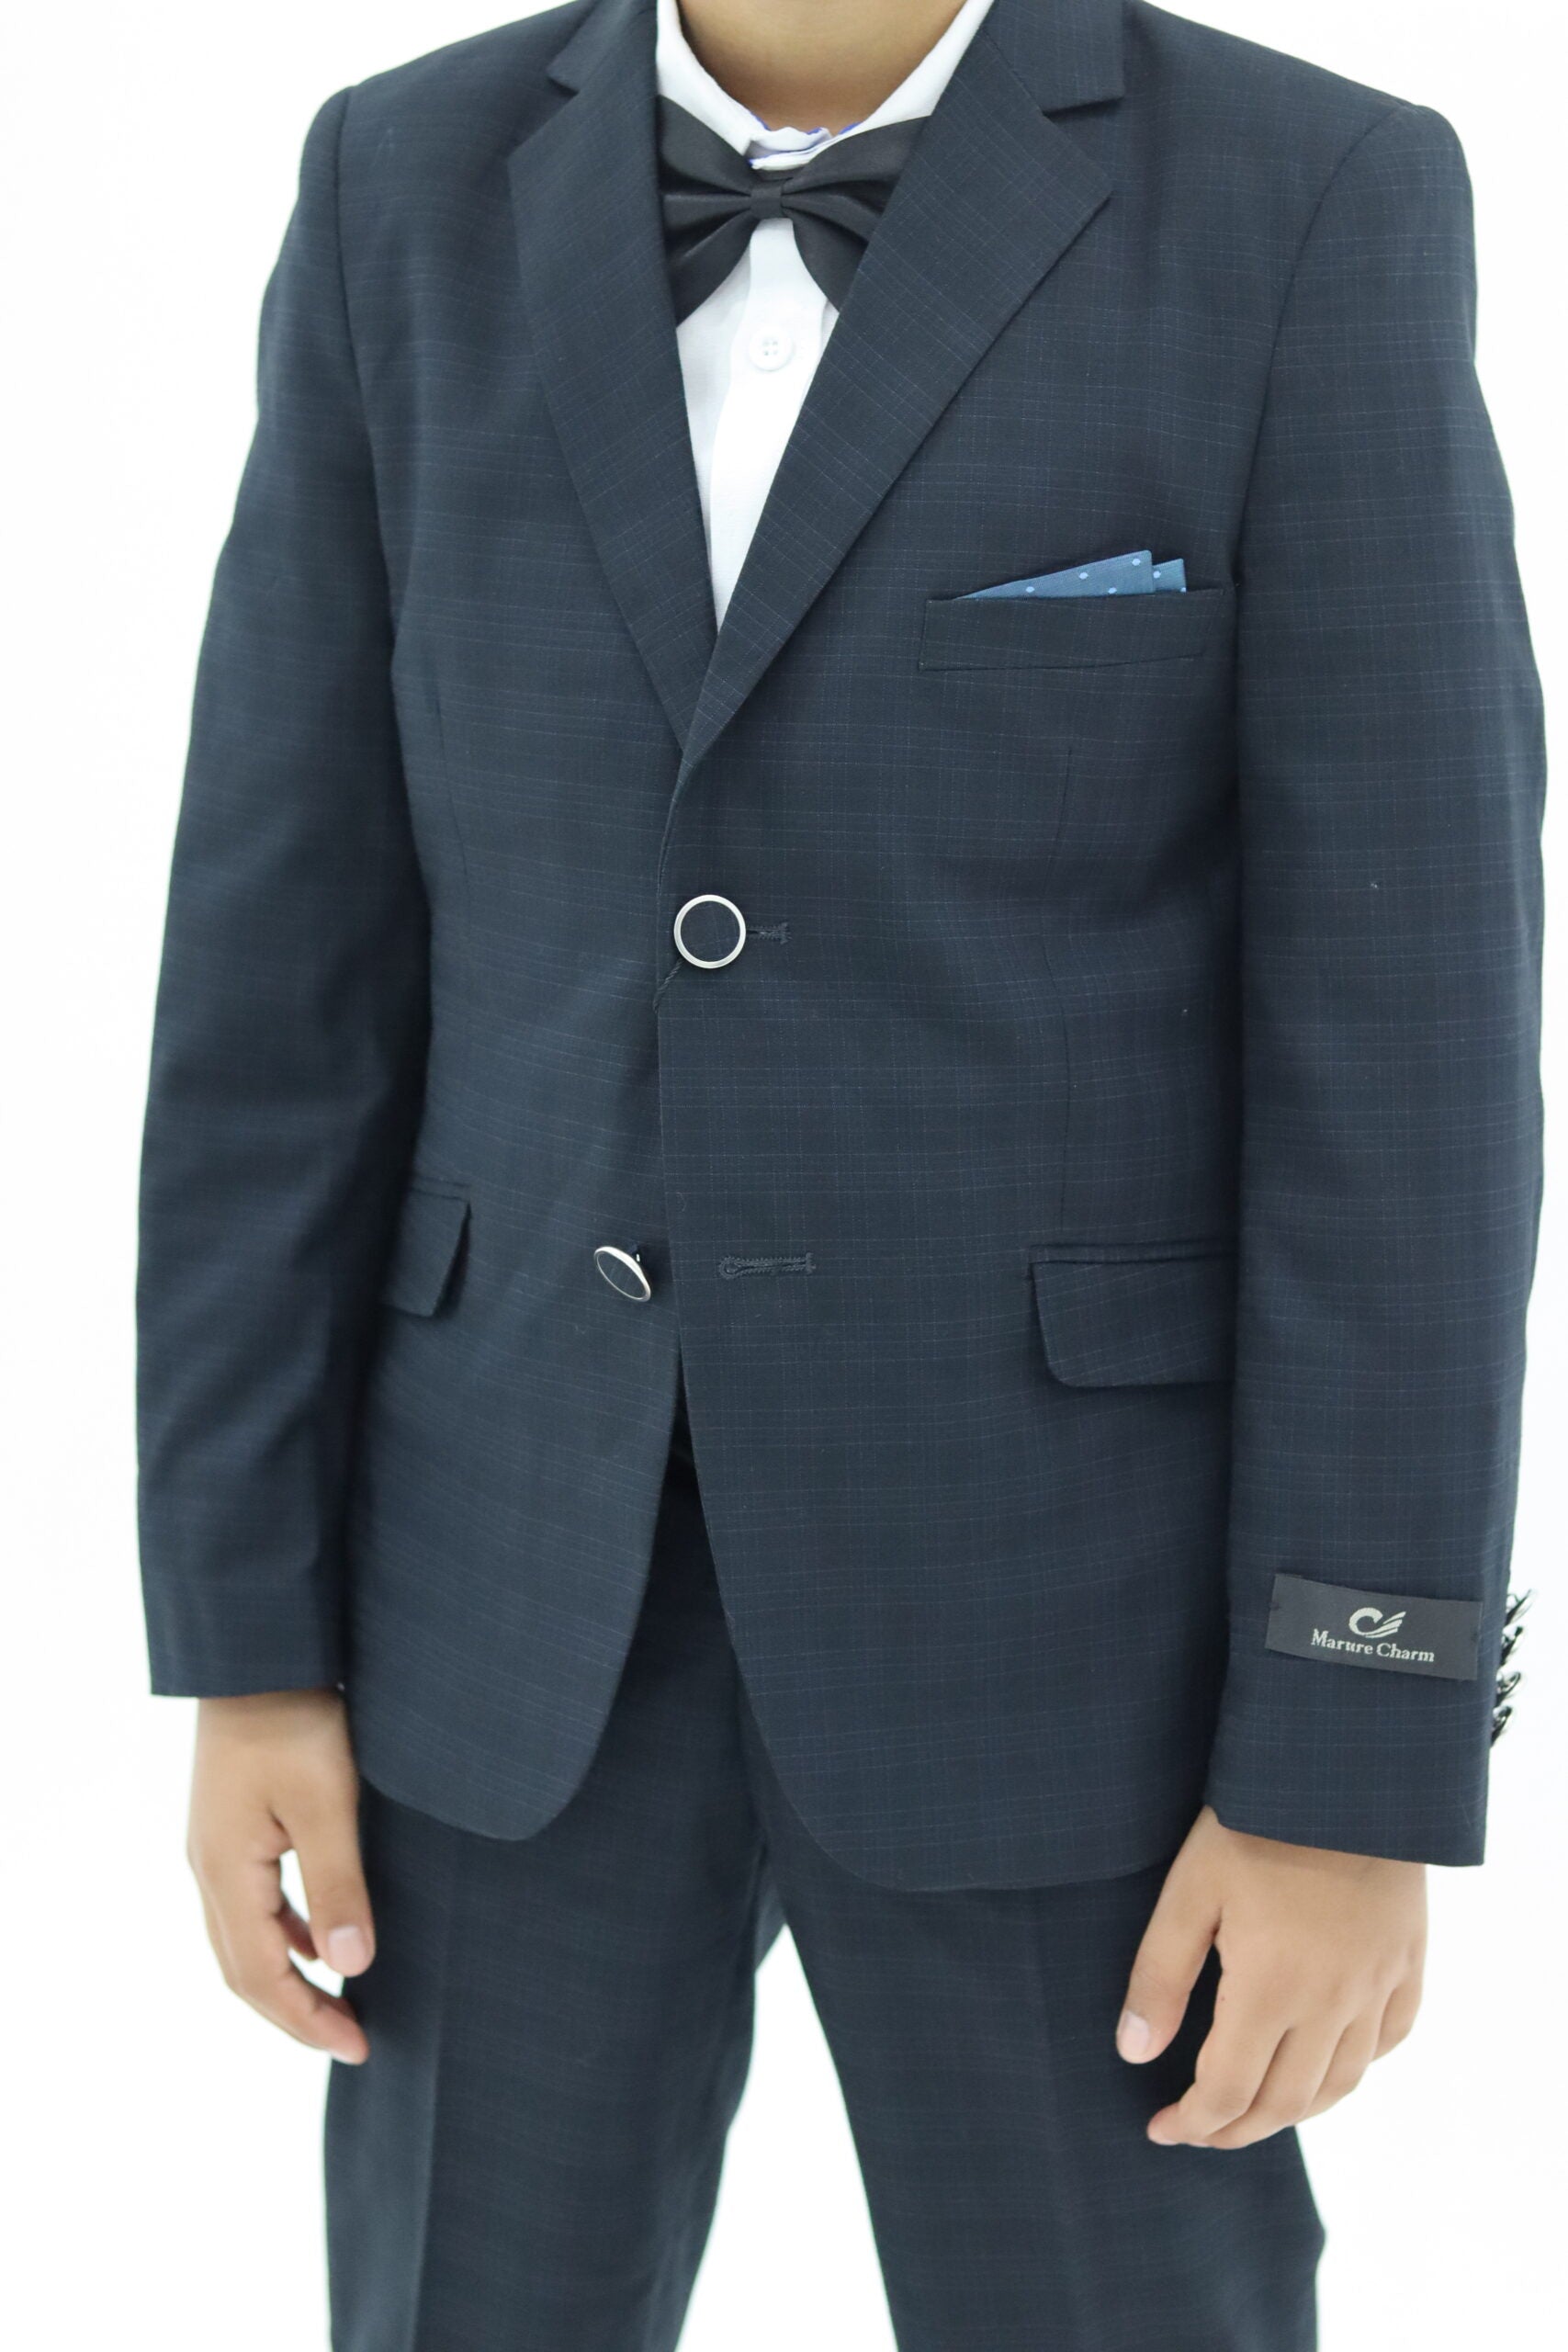 Boy Slim Fit Black Textured Suit 2Pc Set